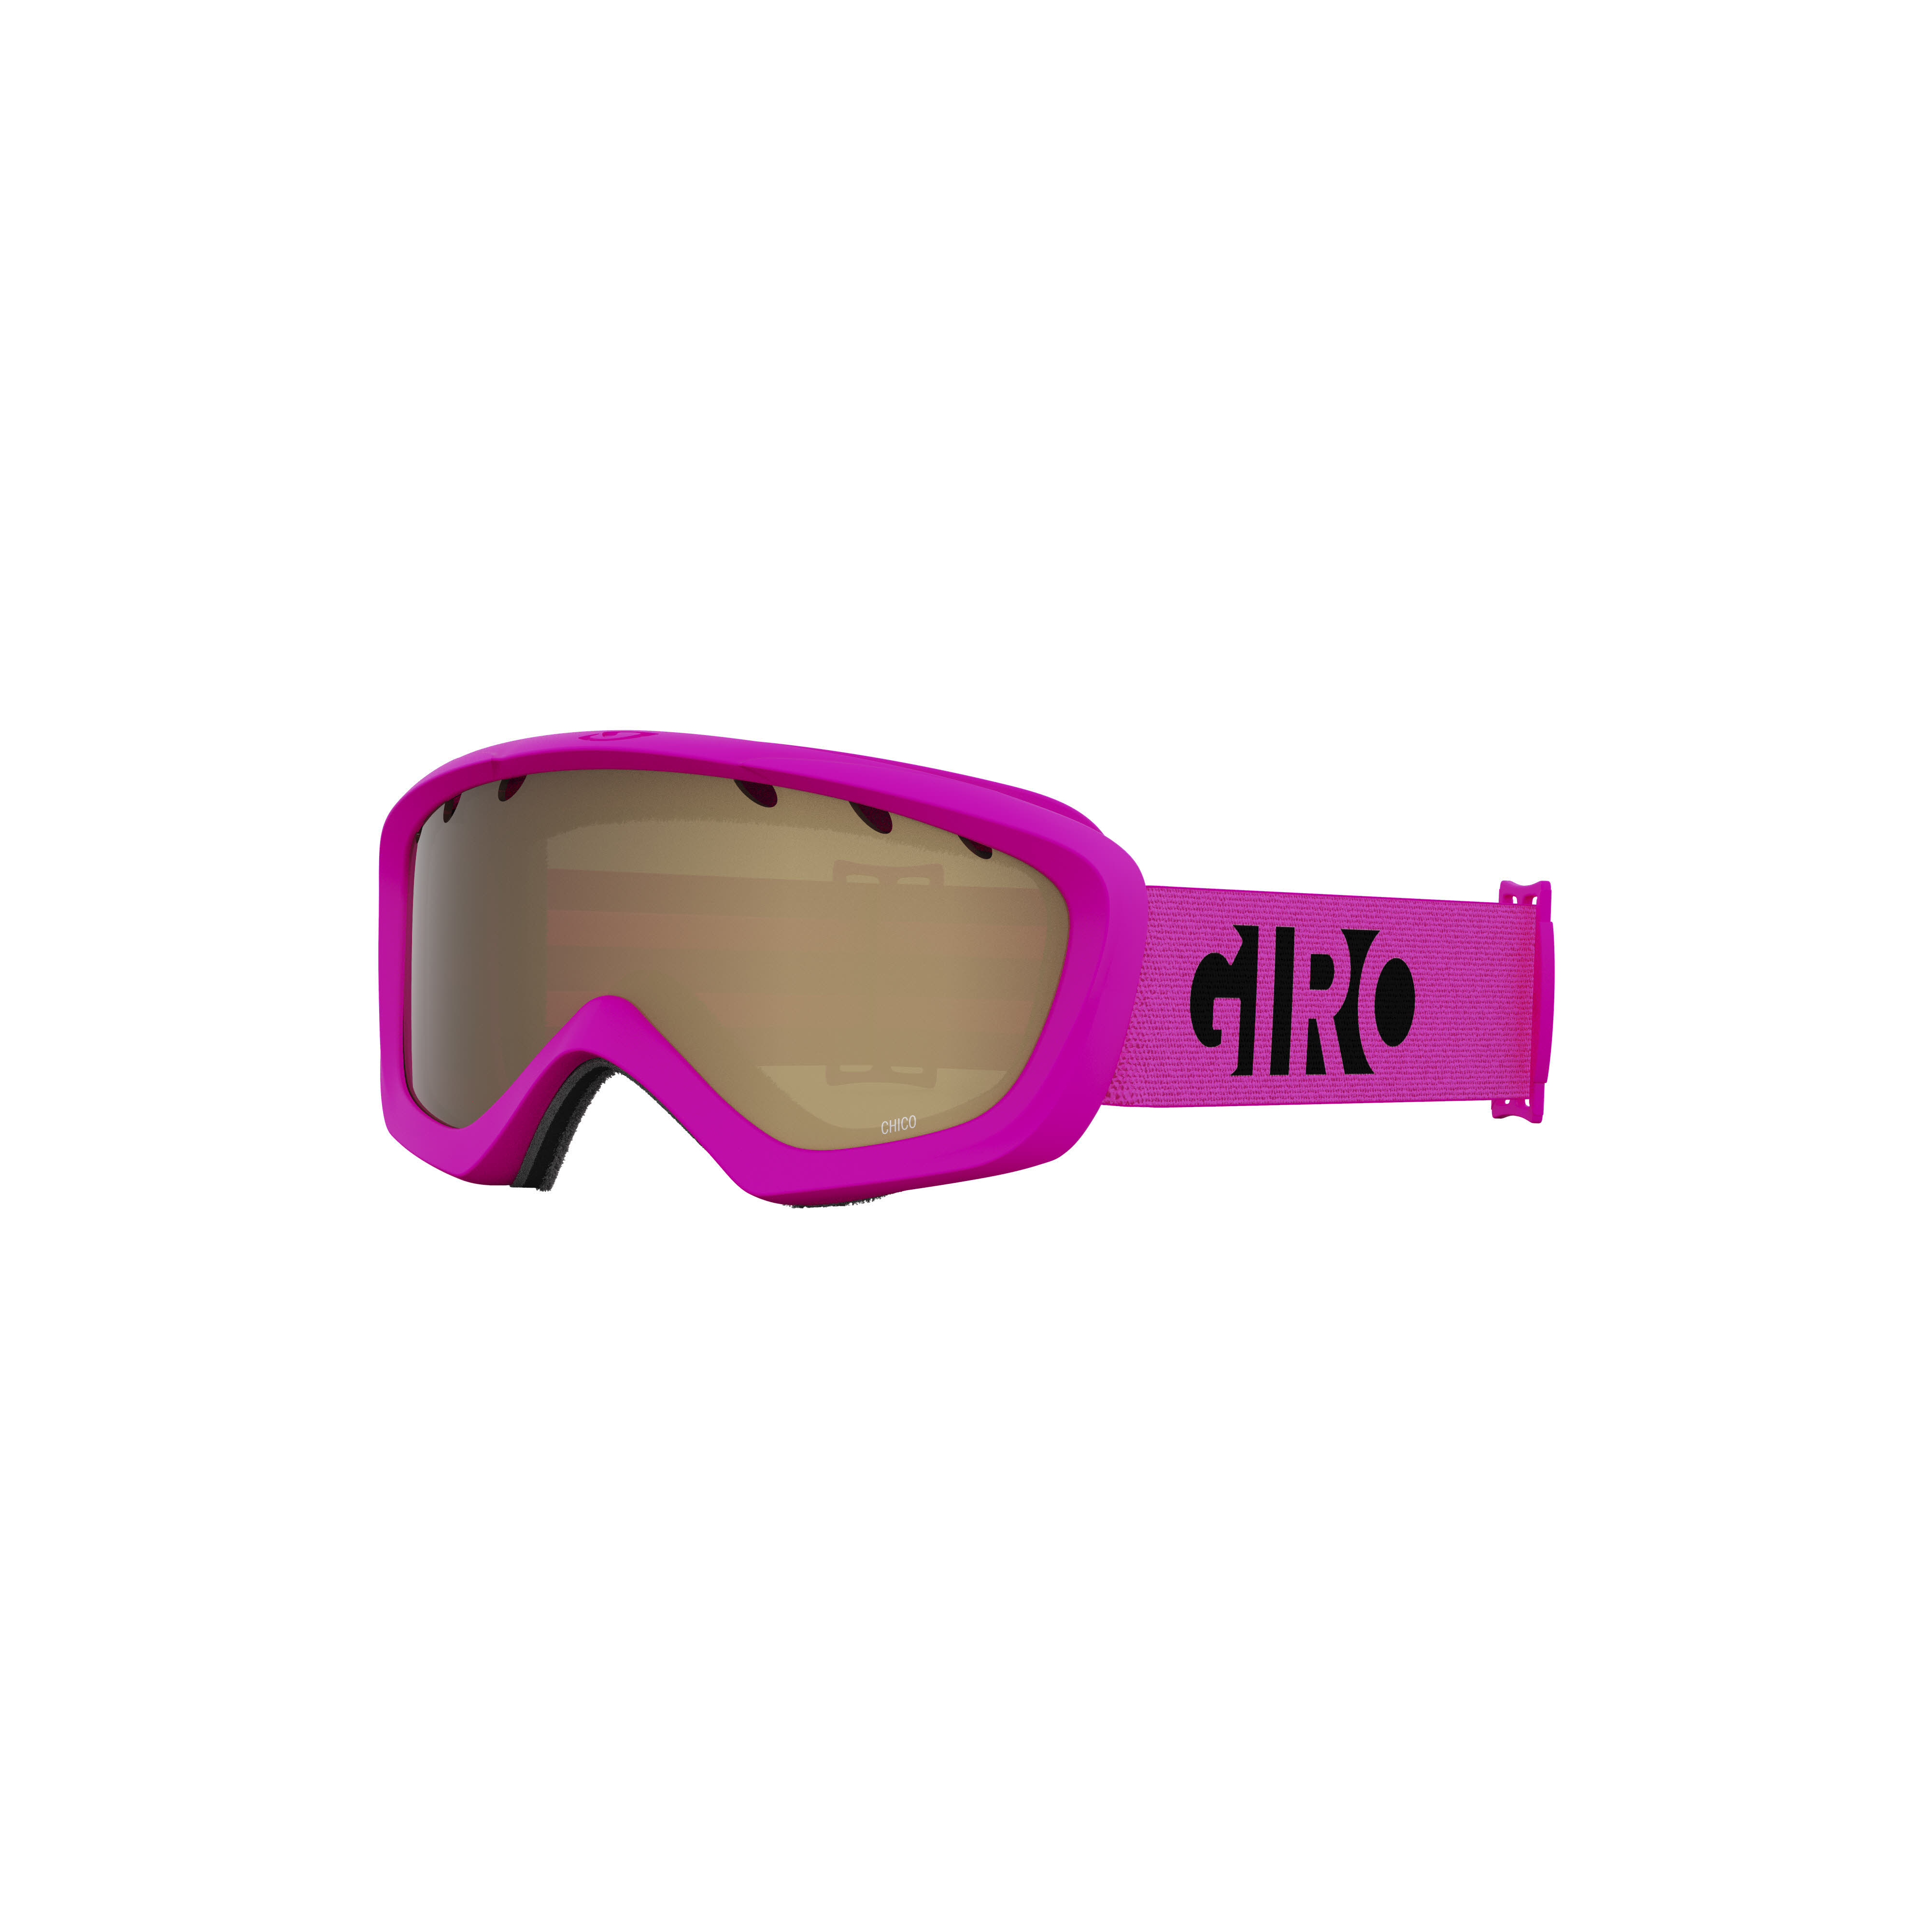 Giro Snow Chico Skibrille Anti-Beschlag Beschichtung Anti-Rutsch Brillenband Kinder pink